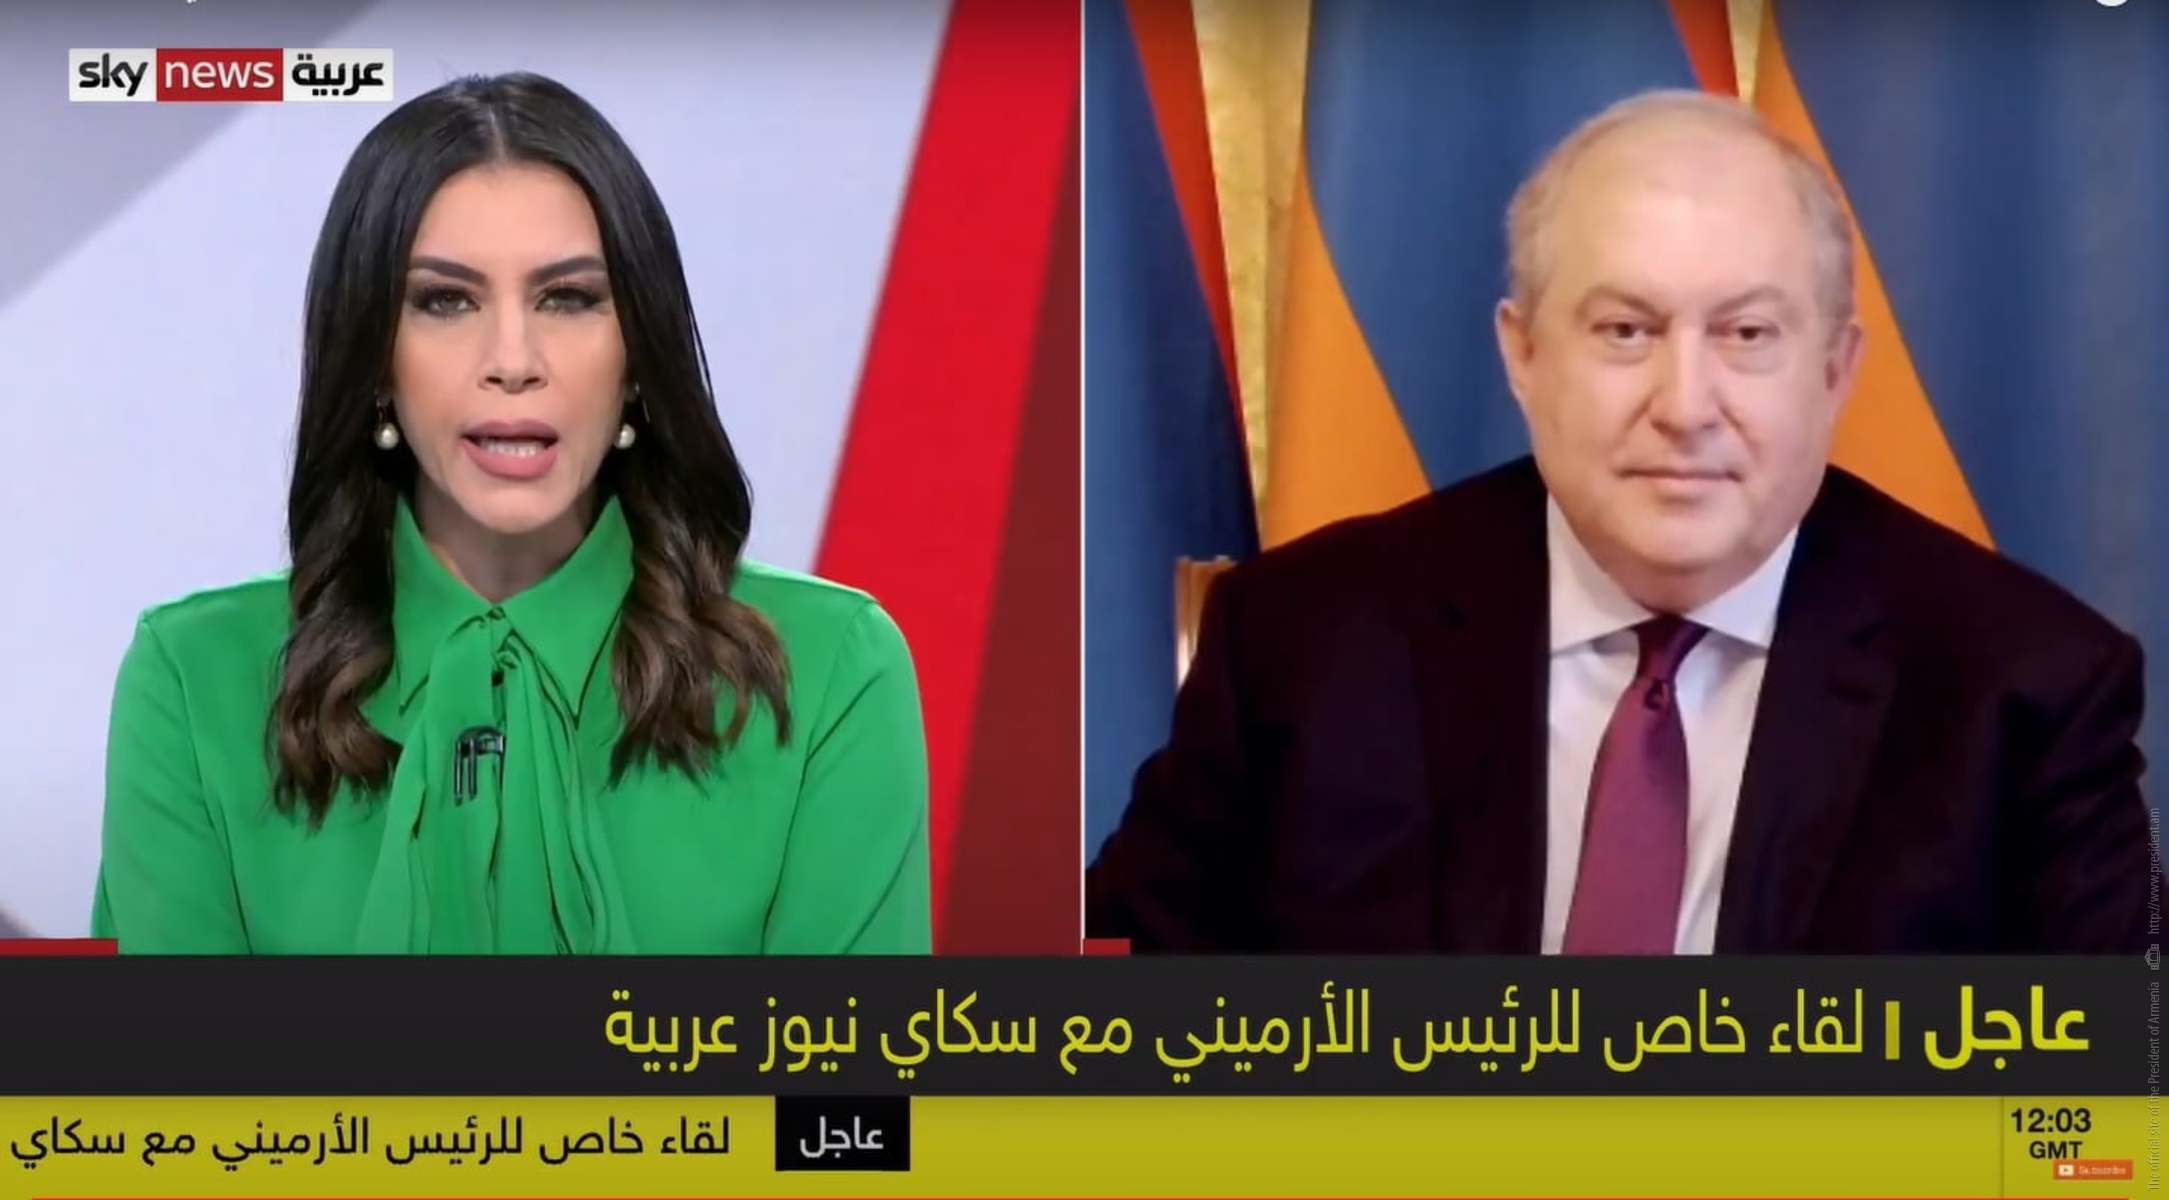 Թուրքիան միջազգային հանրության ճնշման ներքո պետք է դուրս գա այս հակամարտությունից. նախագահ Սարգսյանի հարցազրույցը Sky News Arabia հեռուստաընկերությանը. ՏԵՍԱՆՅՈՒԹ